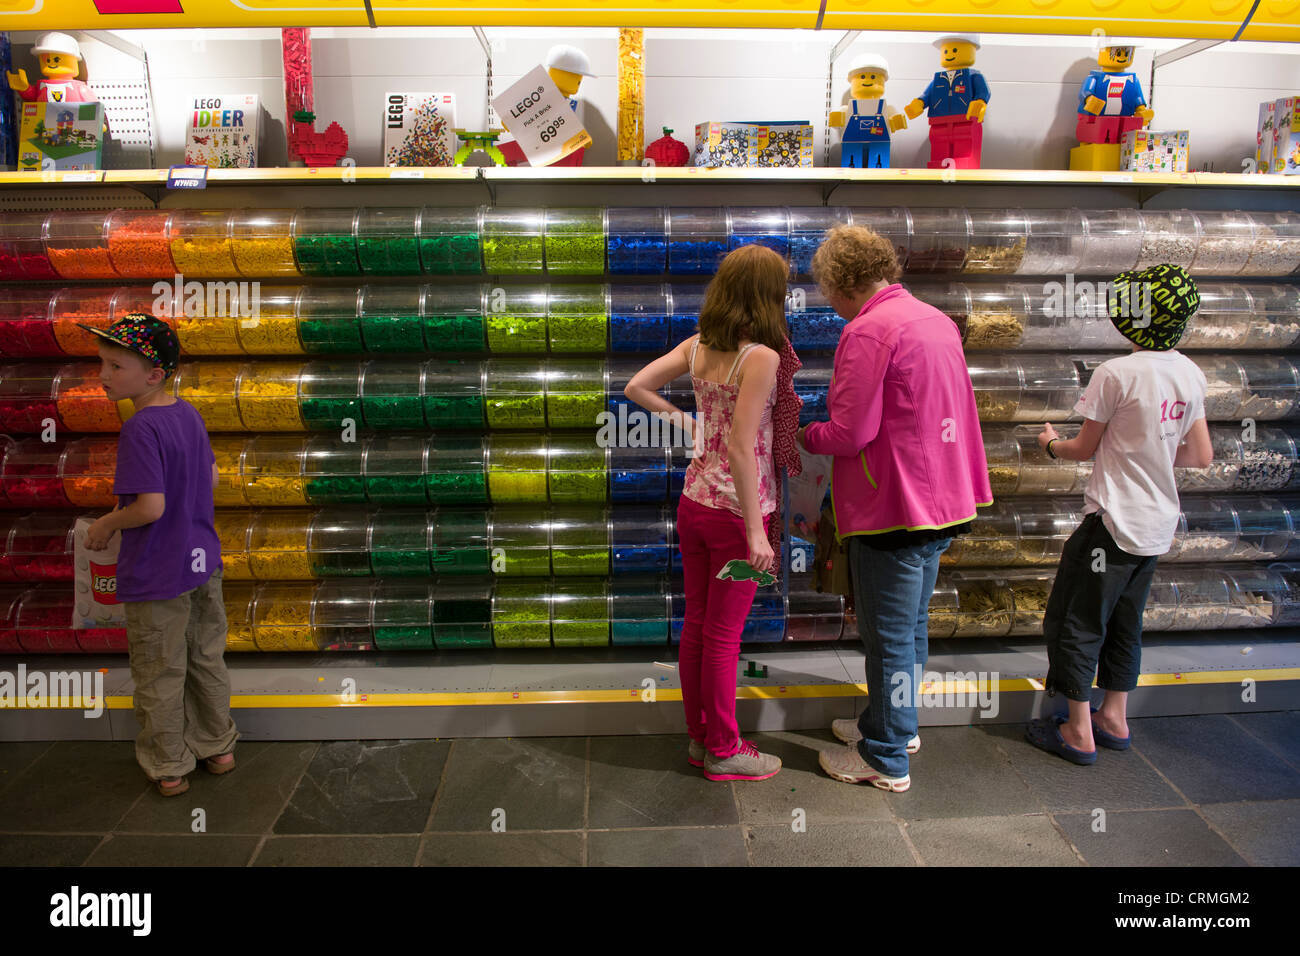 Tekstforfatter væv Antagelser, antagelser. Gætte Tourists looking at traditional Lego pieces inside the Lego Shop, Legoland,  Billund, Denmark Stock Photo - Alamy